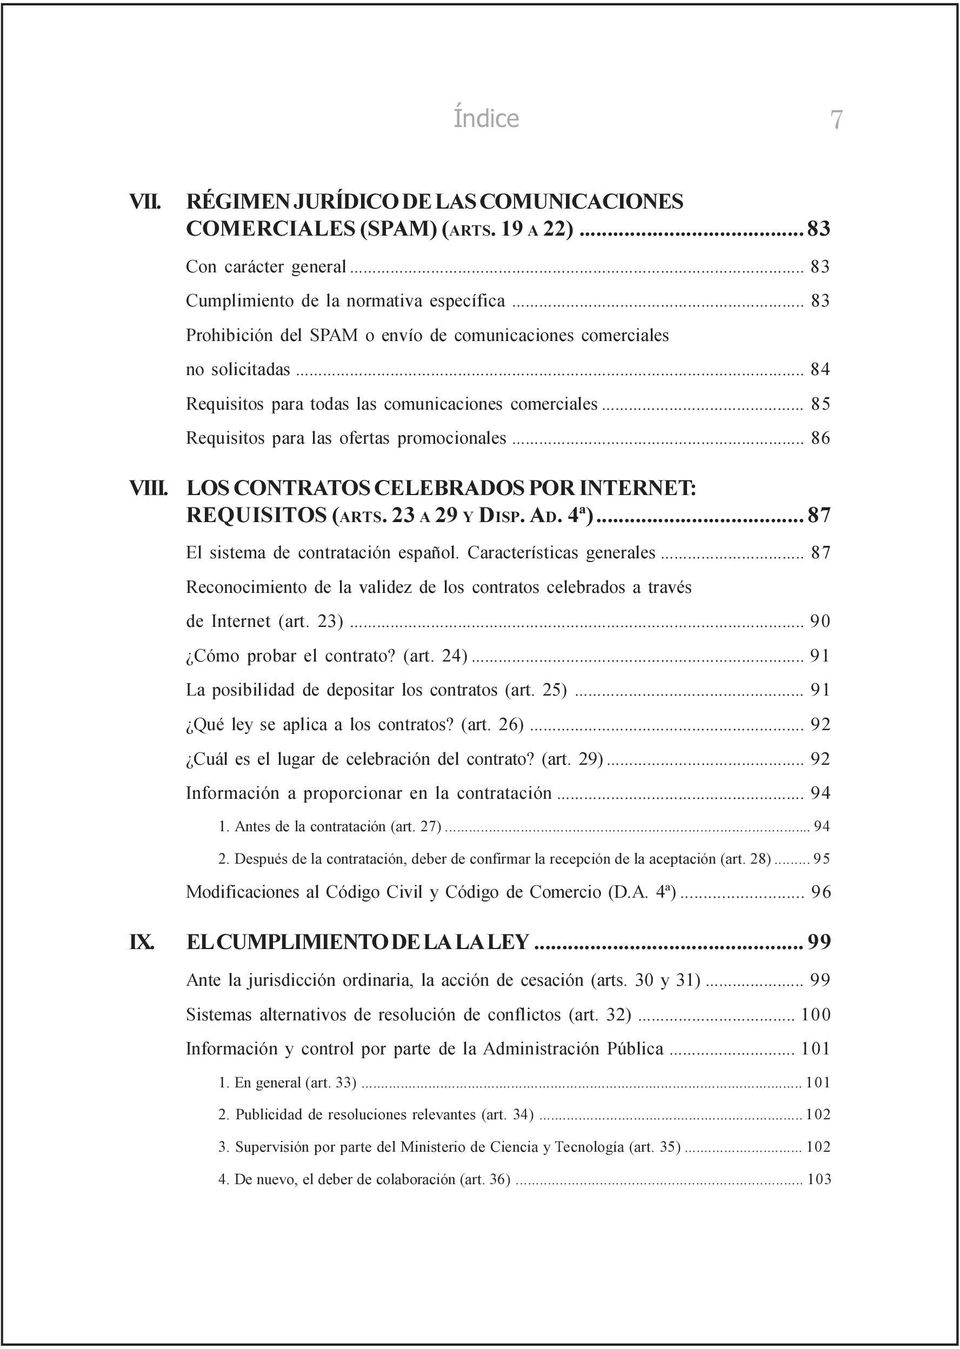 LOS CONTRATOS CELEBRADOS POR INTERNET: REQUISITOS (ARTS. 23 A 29 Y DISP. AD. 4ª)... 87 El sistema de contratación español. Características generales.